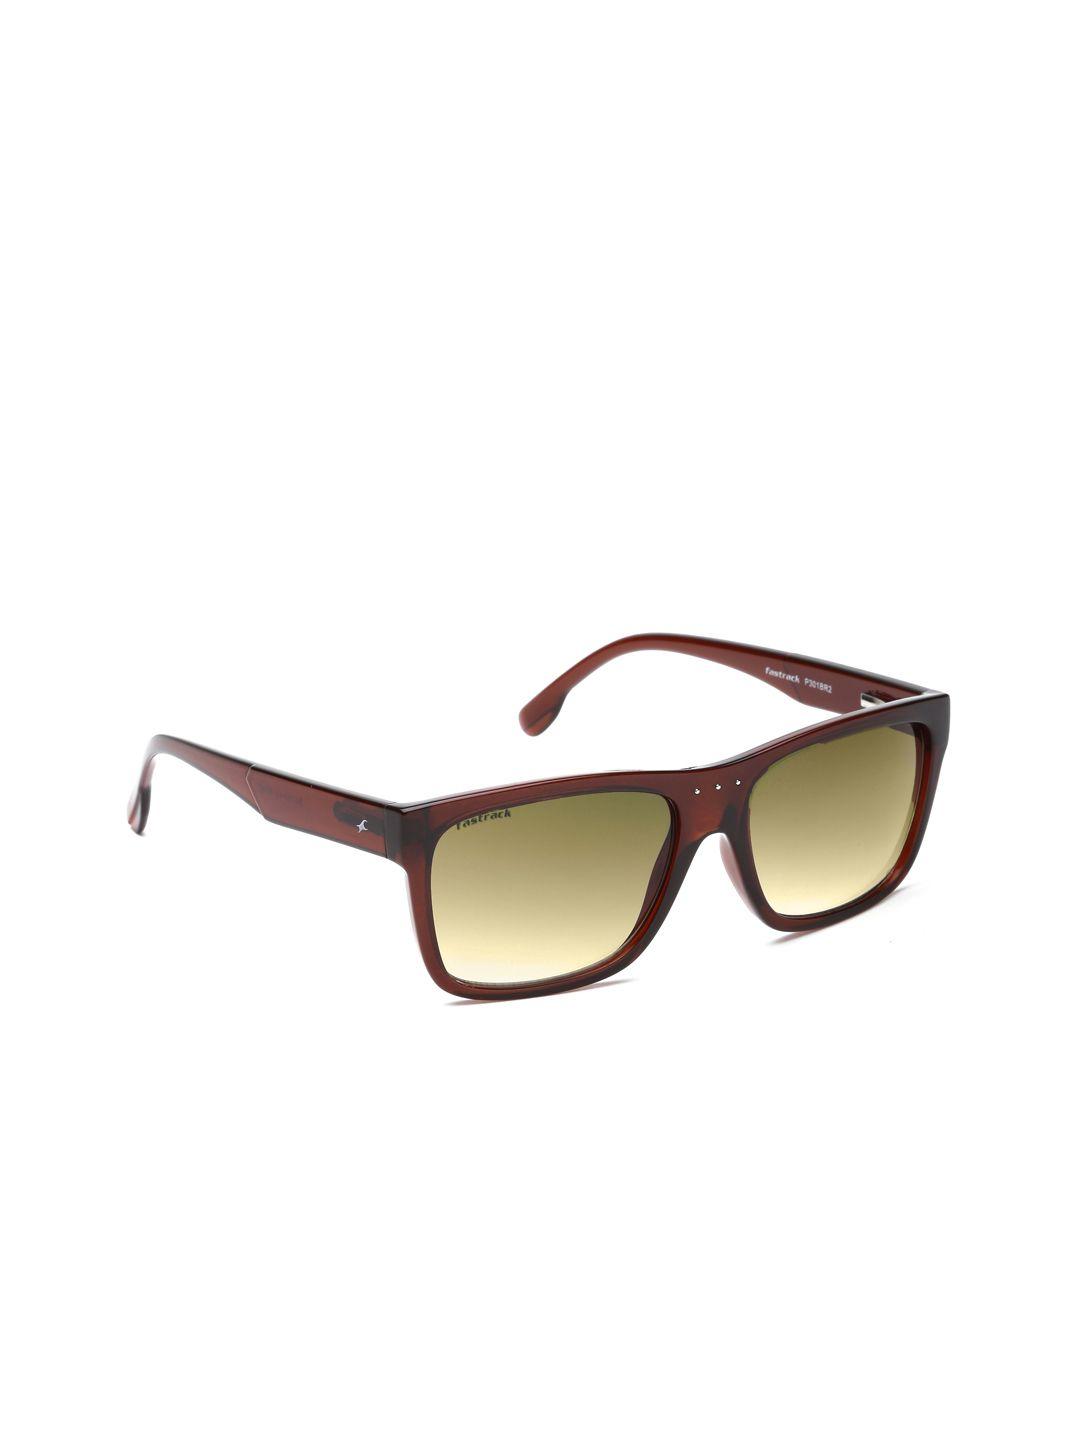 fastrack-men-gradient-sunglasses-p301br2